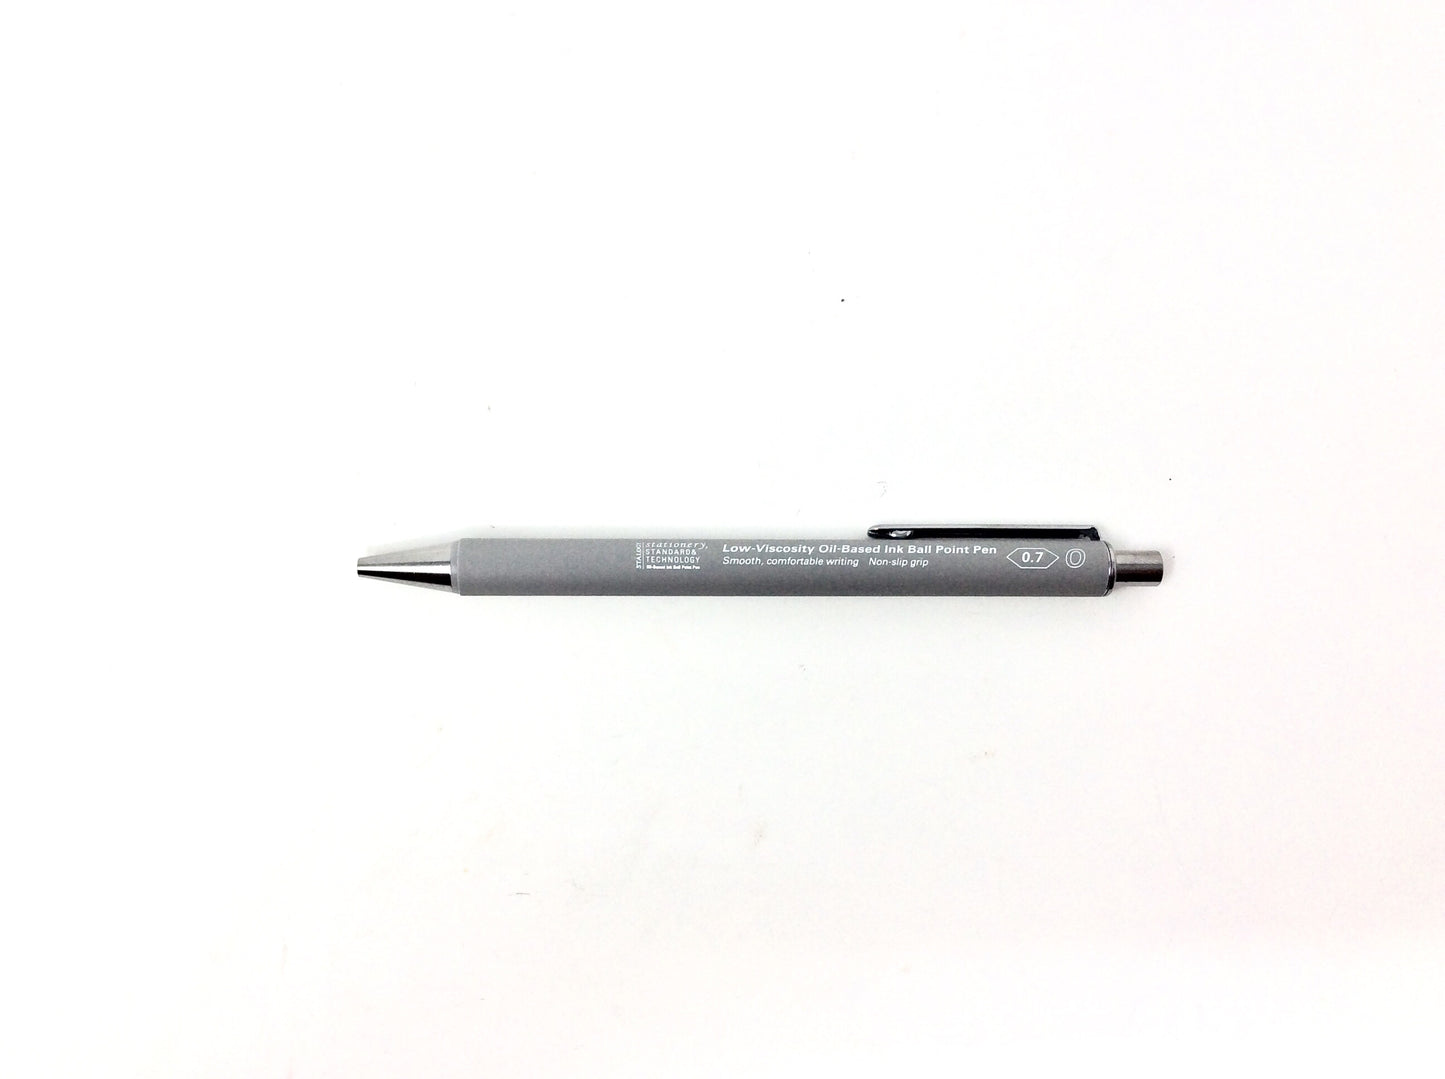 Oil-Based Ink Ball Point Pen